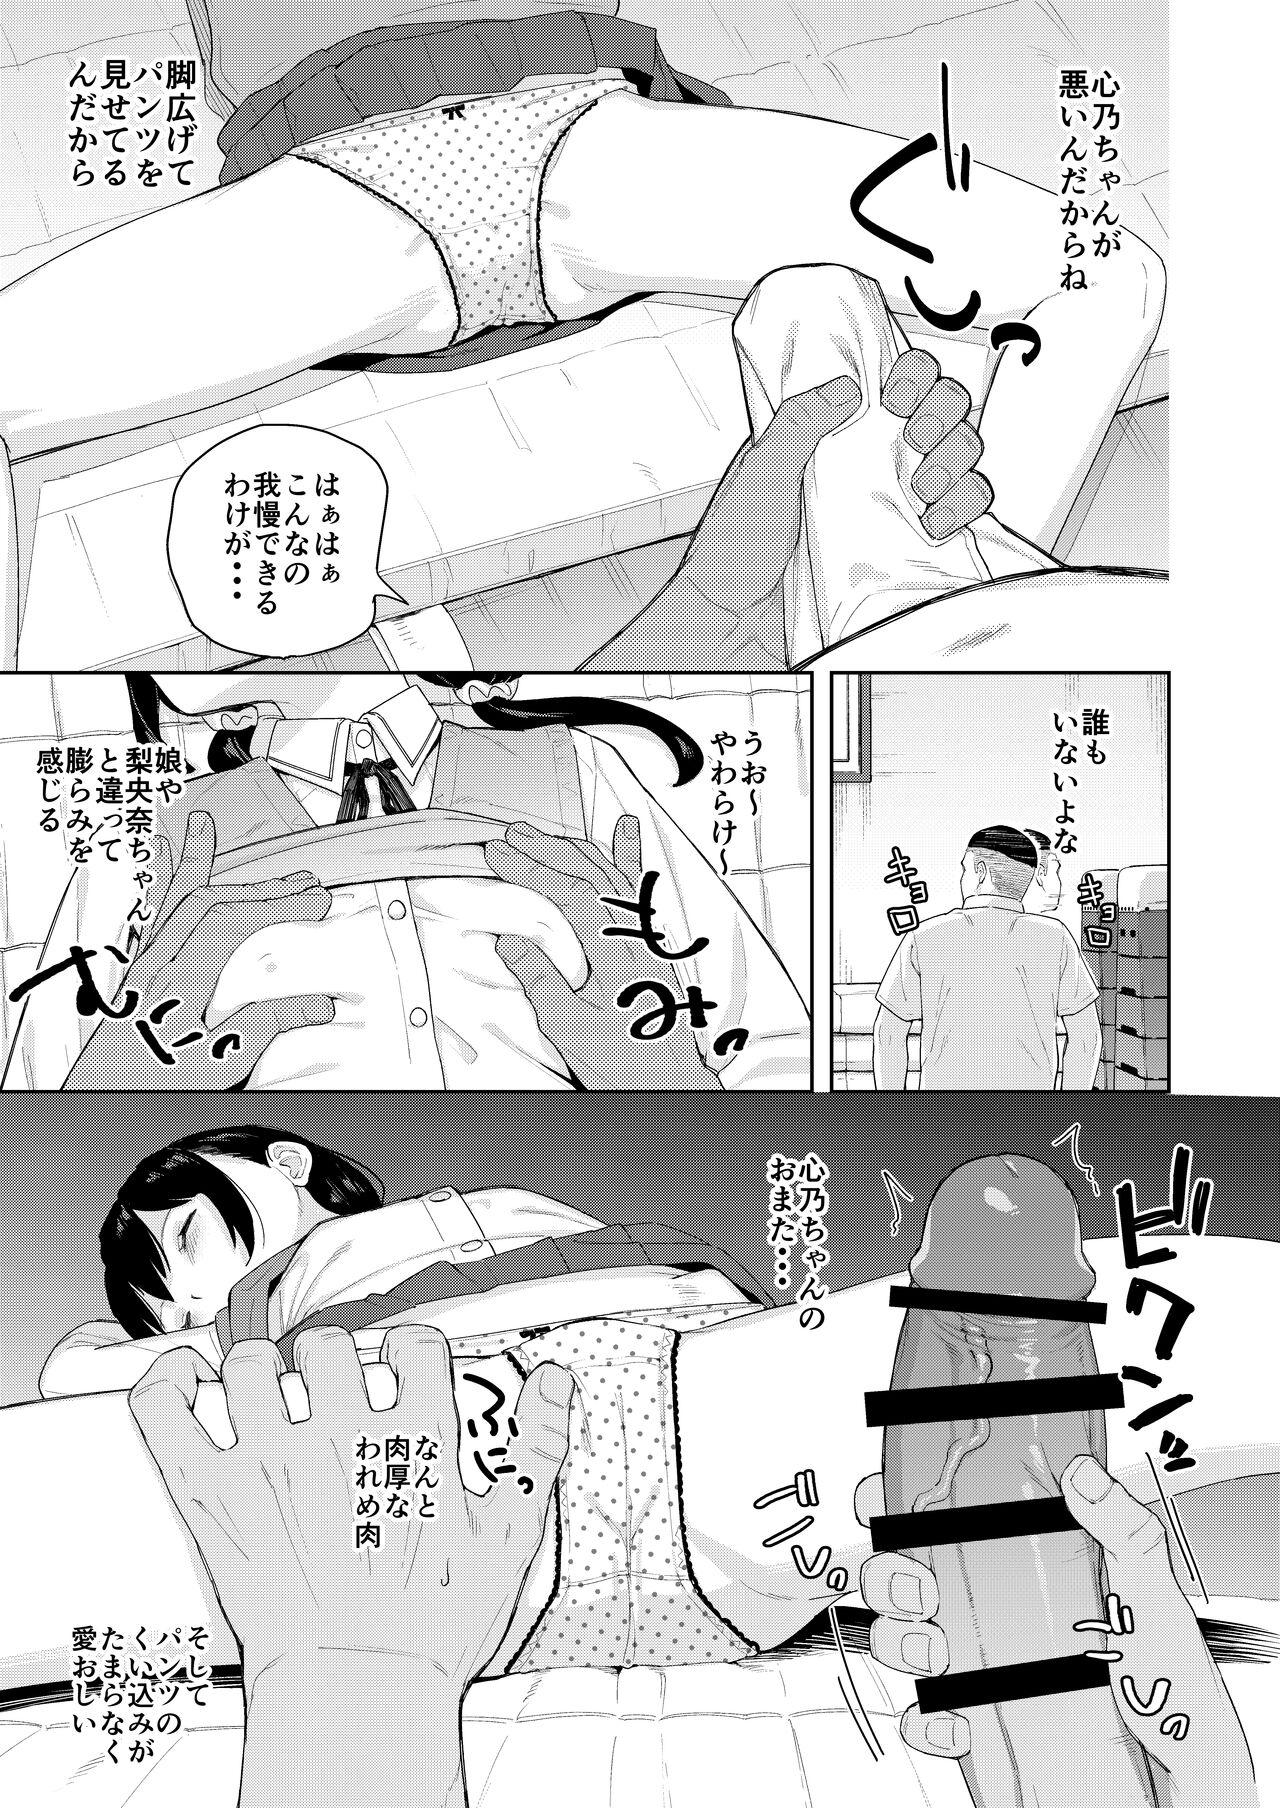 Lolicon Musume no Tomodachi no Mesugaki ni Okasaremashita 2 - Original 18 Year Old - Page 8